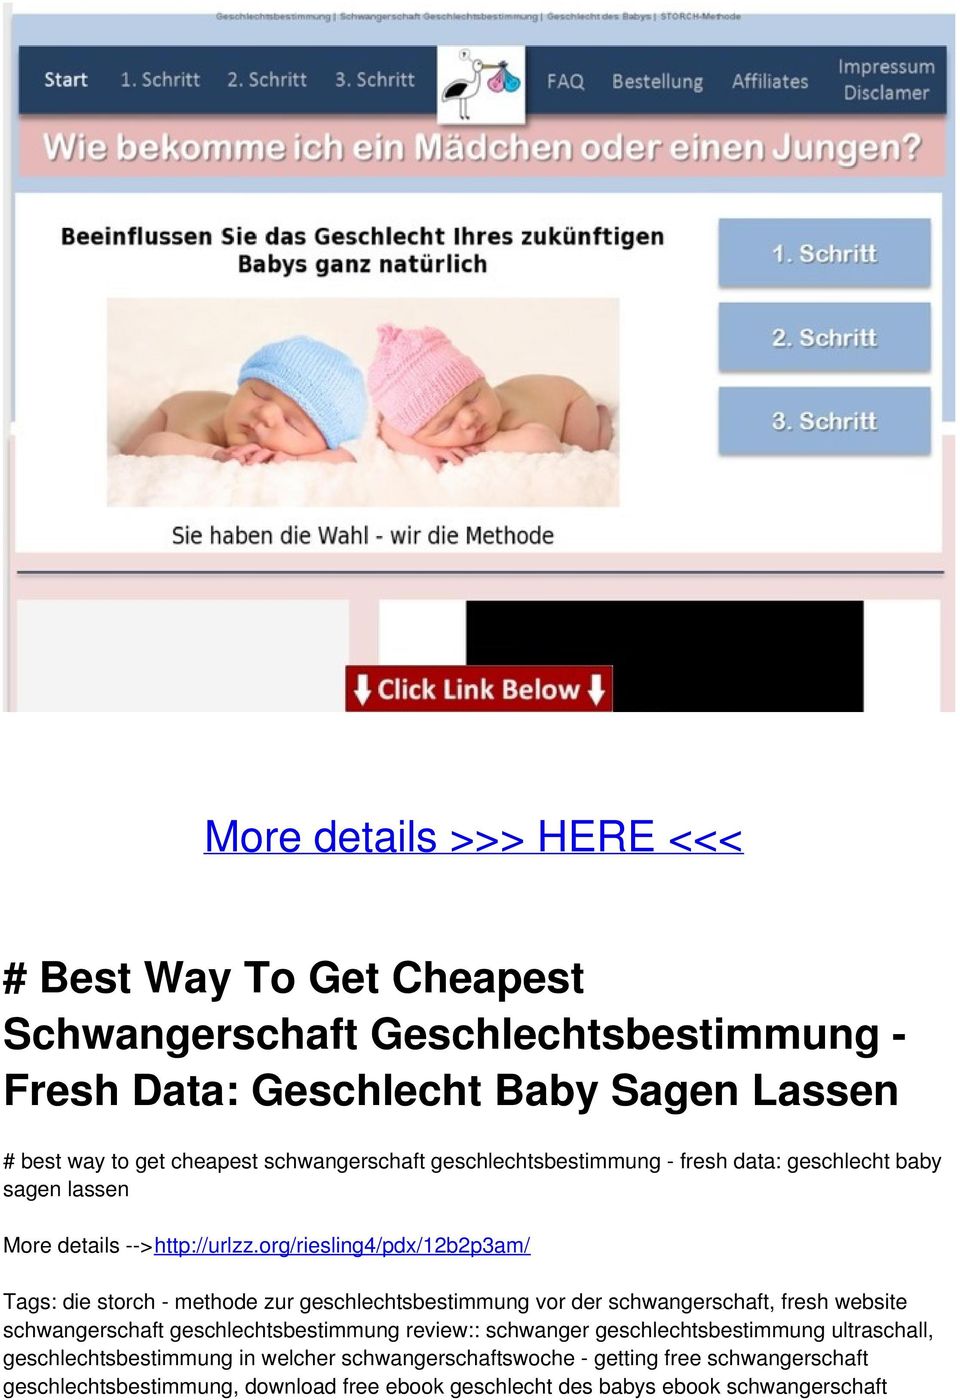 Best Way To Get Cheapest Schwangerschaft Geschlechtsbestimmung Fresh Data Geschlecht Baby Sagen Lassen Pdf Kostenfreier Download